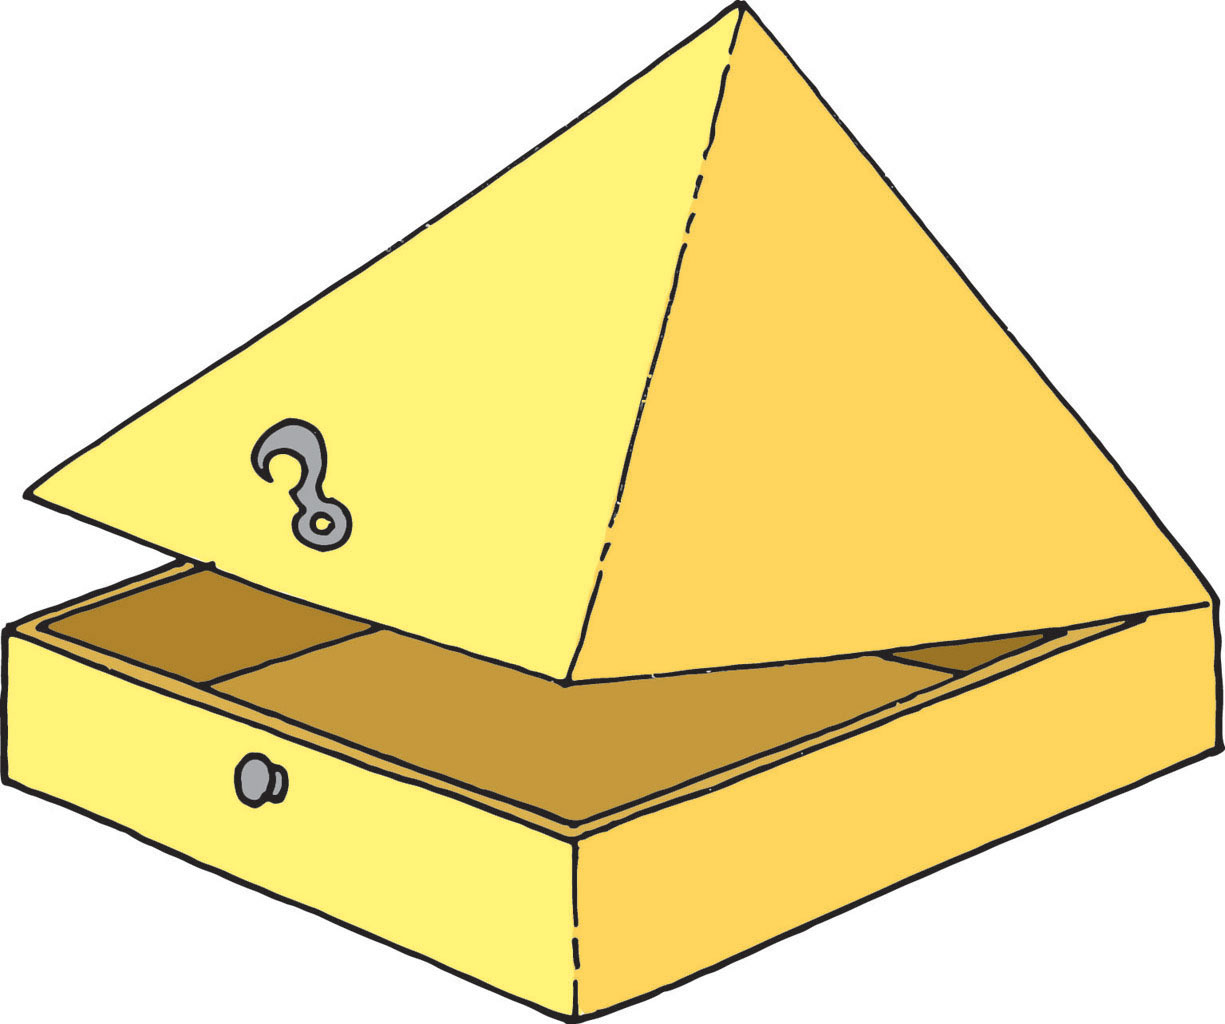 Slika prikazuje kutiju čiji je donji dio pravilna četverostrana prizma bez gornje baze, a poklopac pravilna četverostrana piramida bez baze.